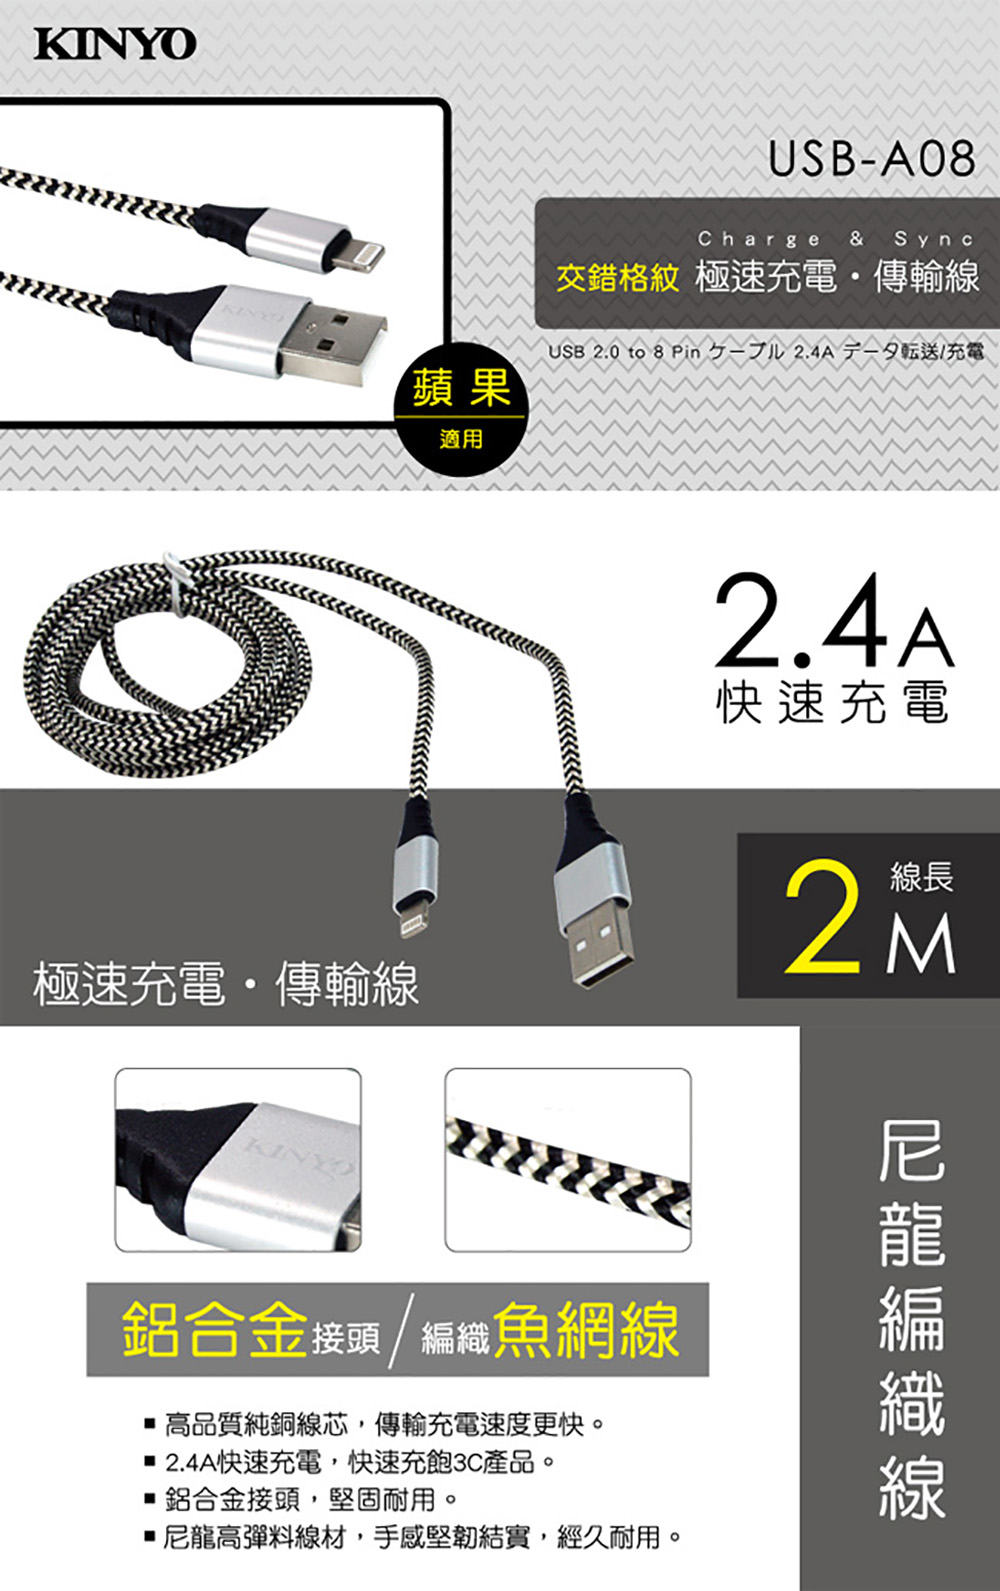 USB kinyo USB 白色 充電傳輸線 編織